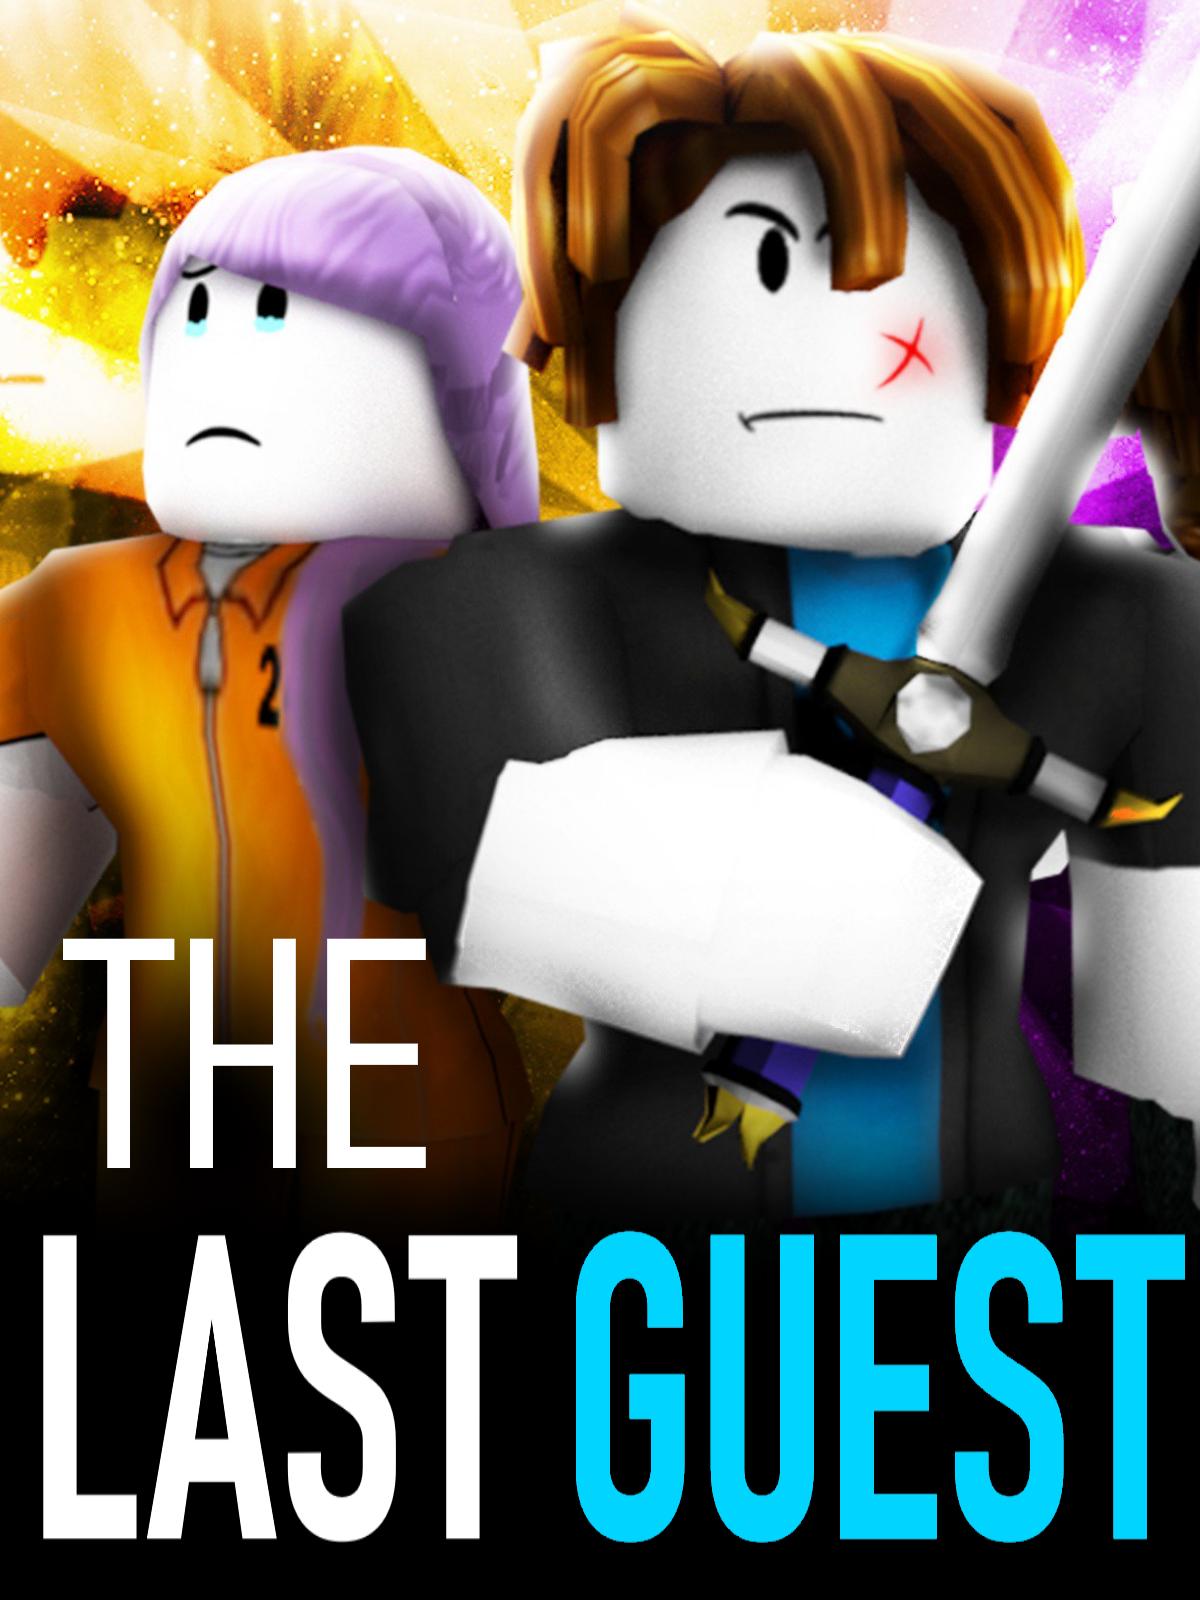 The Last Guest (@TheLastGuestofi) / X